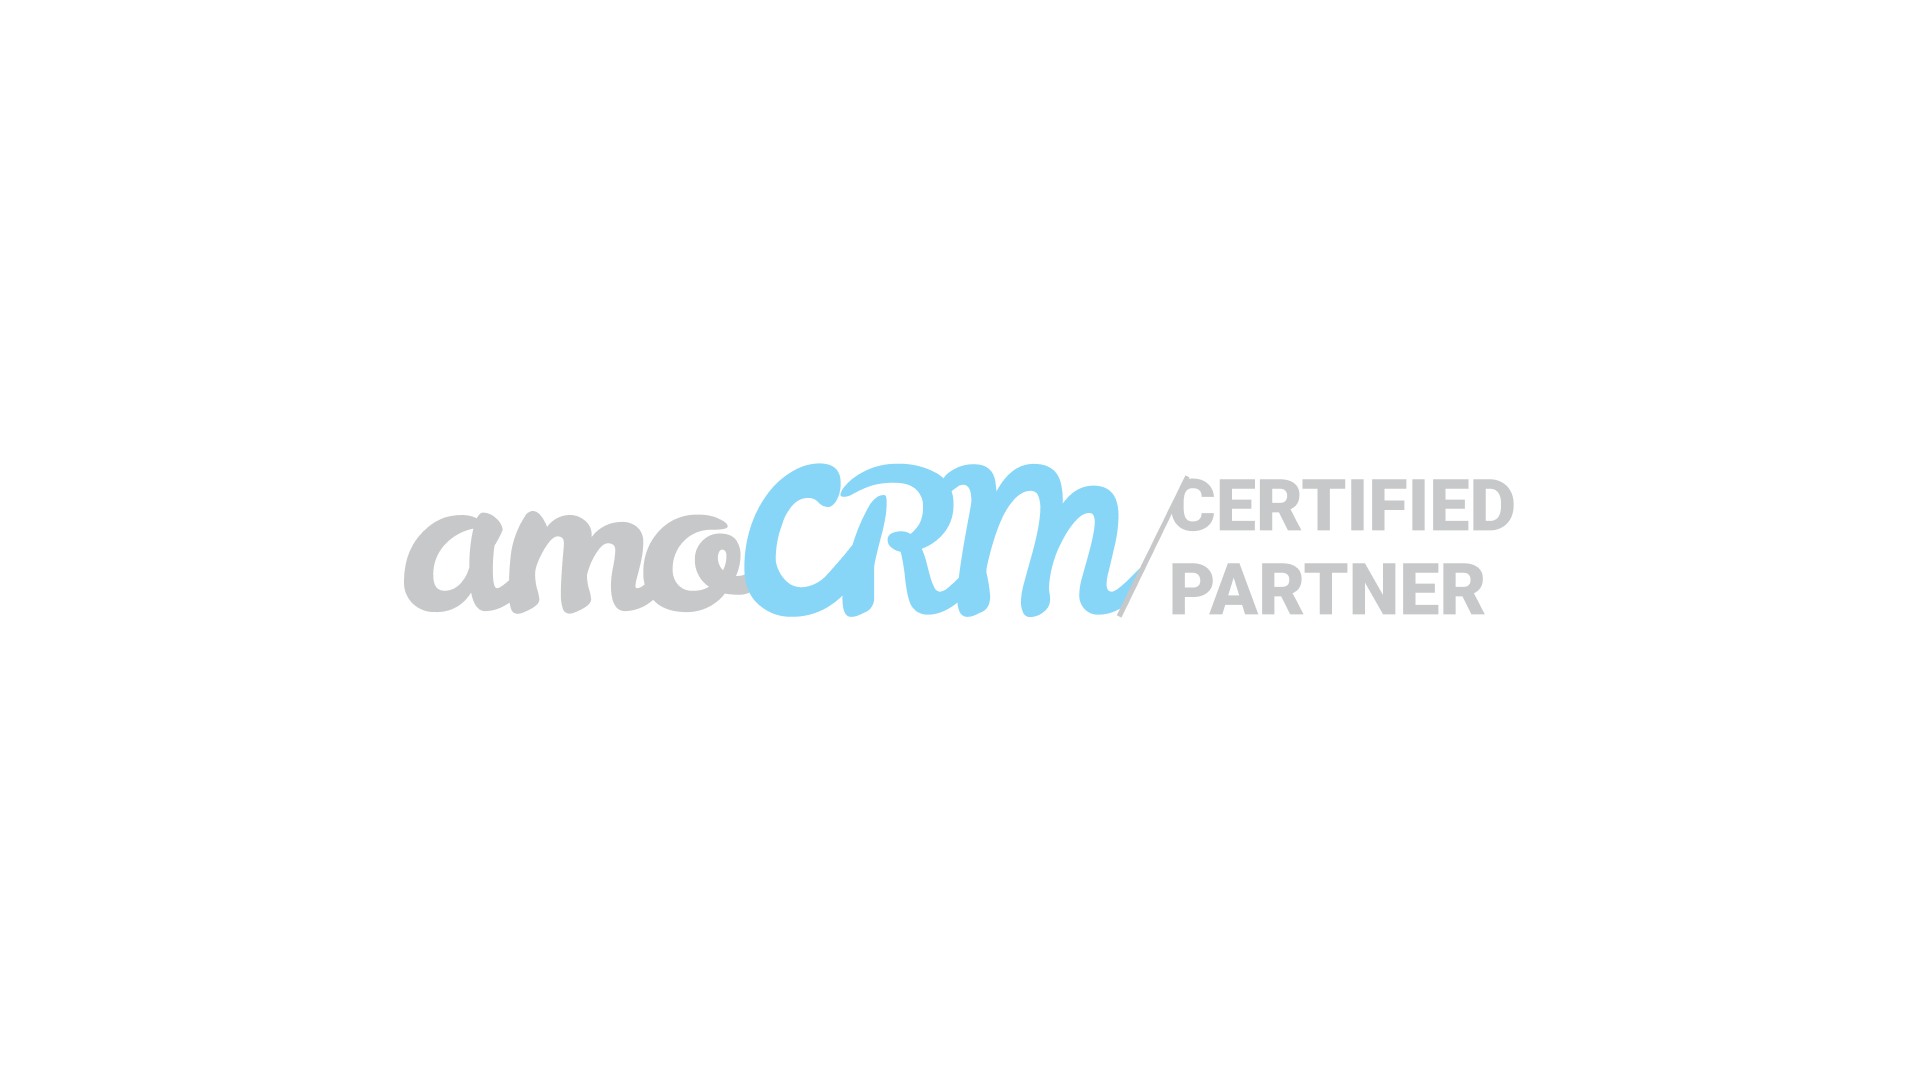 Partner certificado por amocrm